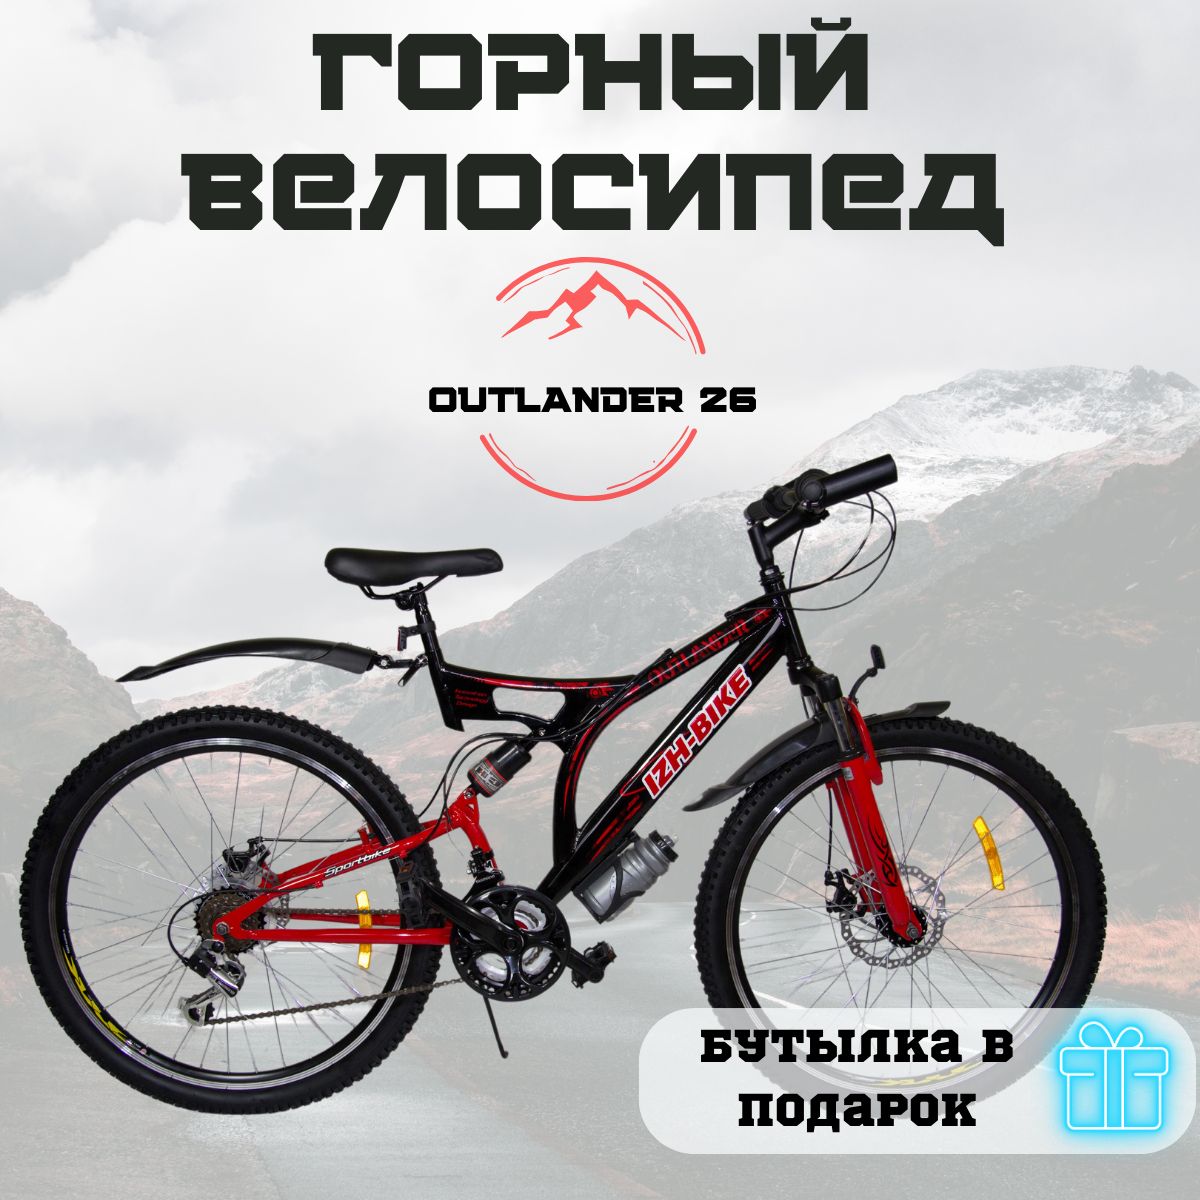 IzhBikeГорныйВелосипедOutlander18,26,2020